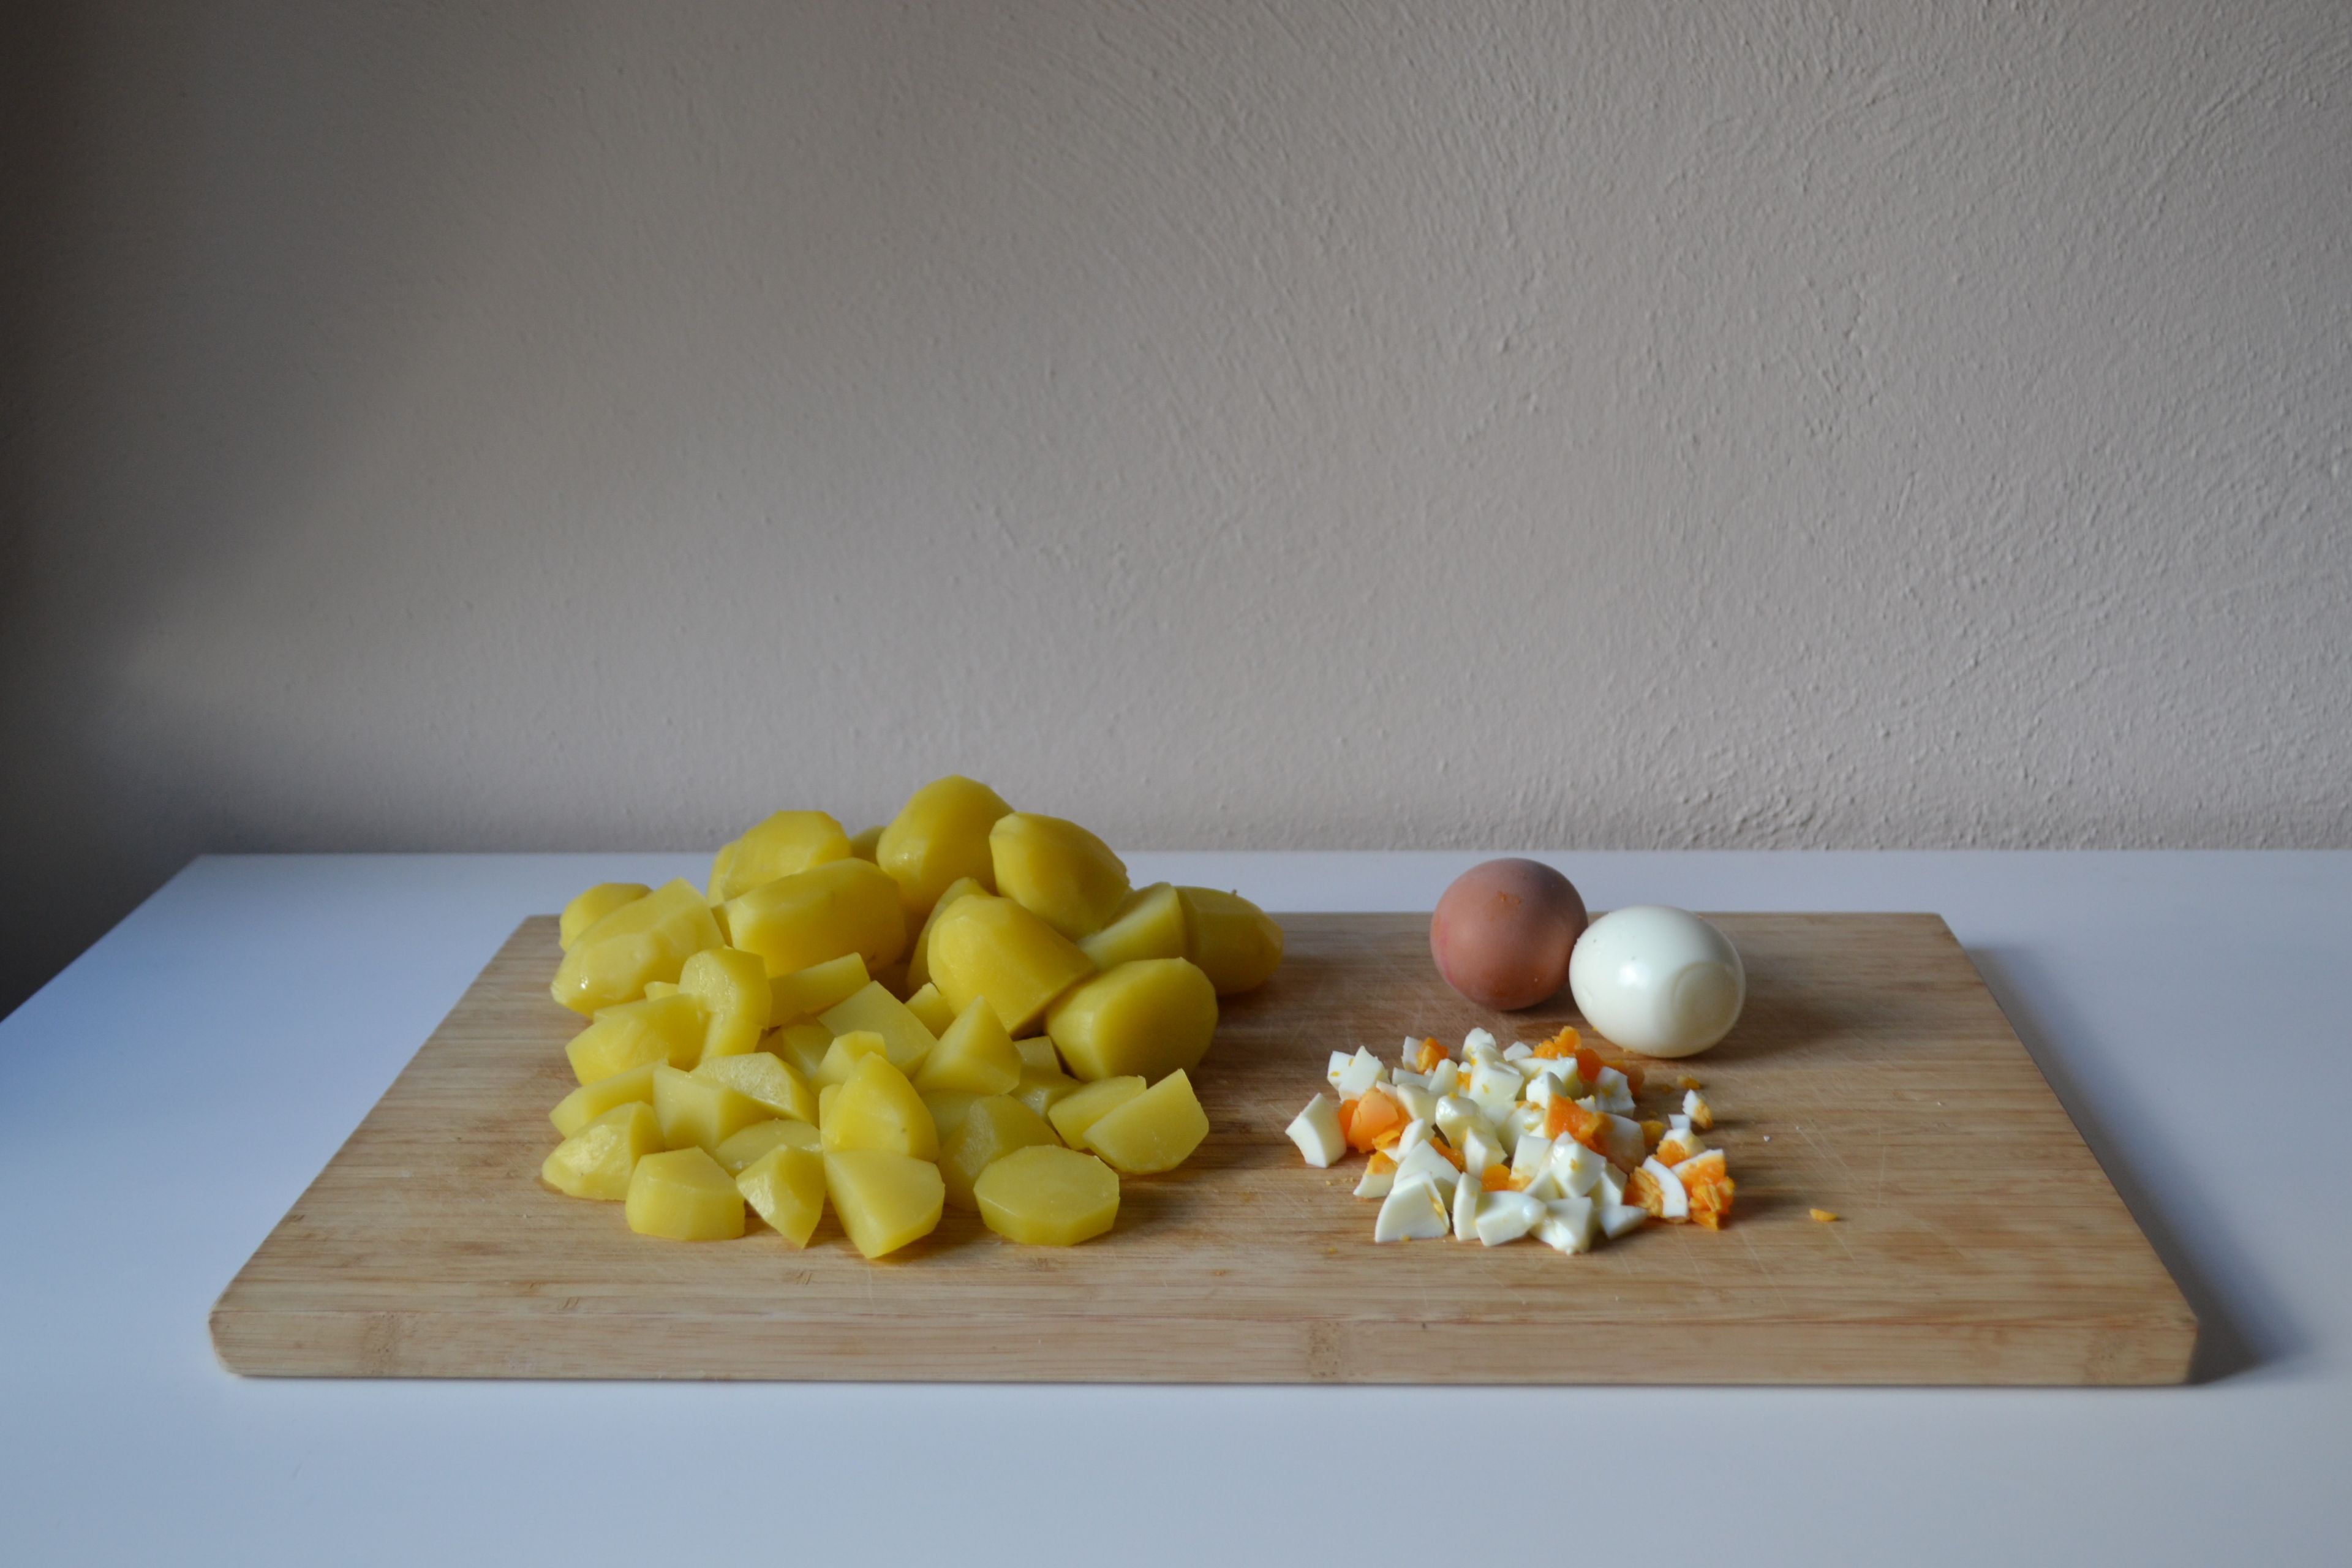 Die kalten Eier schälen und in kleine Stücke schneiden. Die Kartoffeln nach Belieben in größere Stücke schneiden. Beides zusammen mit den Gewürzgurken- und Apfelstücken in eine Schüssel geben.